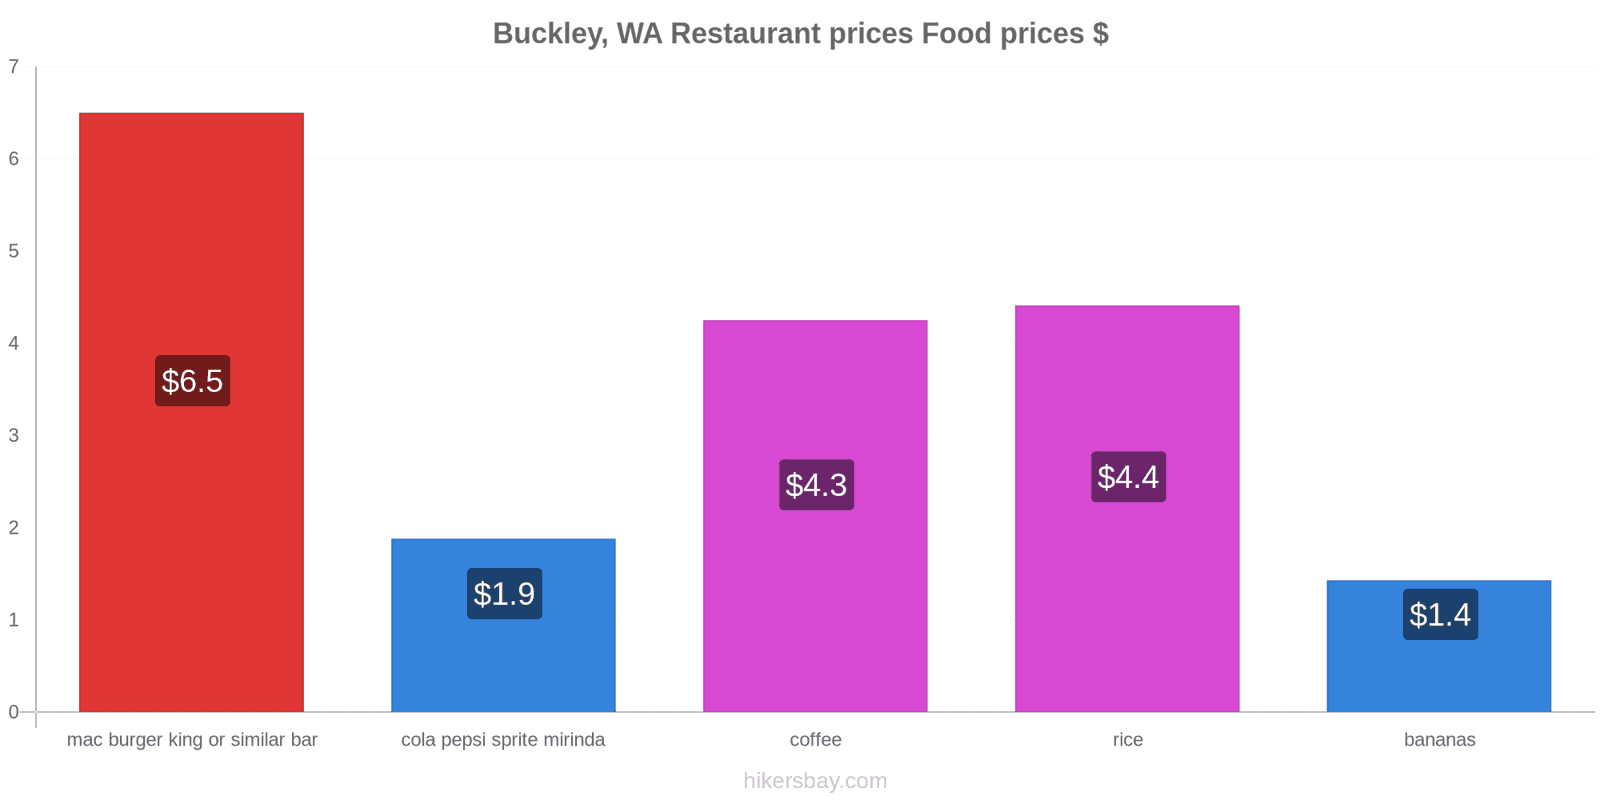 Buckley, WA price changes hikersbay.com